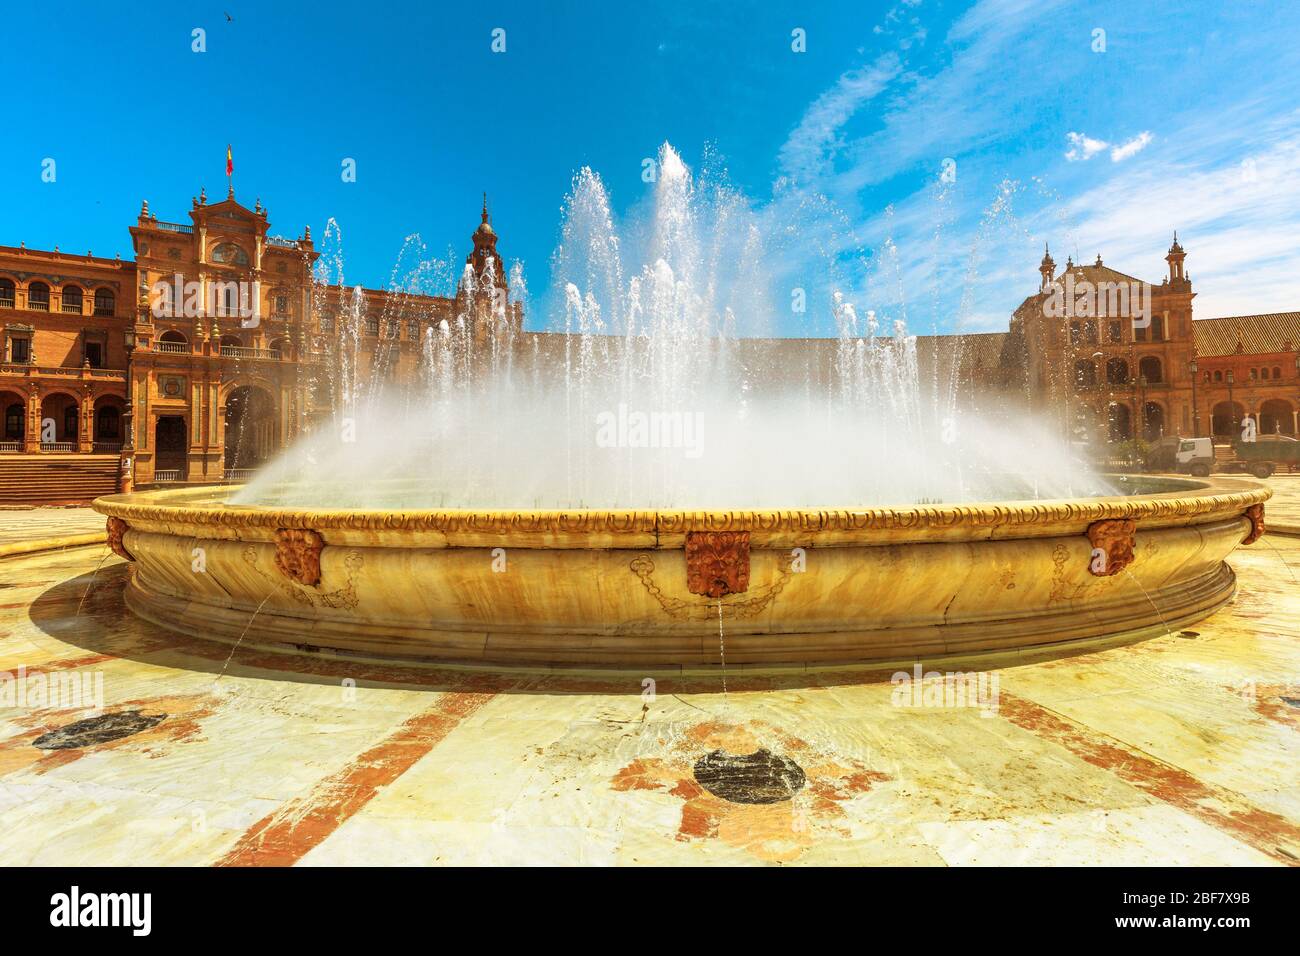 Fontana centrale di Plaza de Espana a Siviglia con edificio rinascimentale composto da archi e colonne. Piazza della Spagna al semaforo pomeridiano Foto Stock